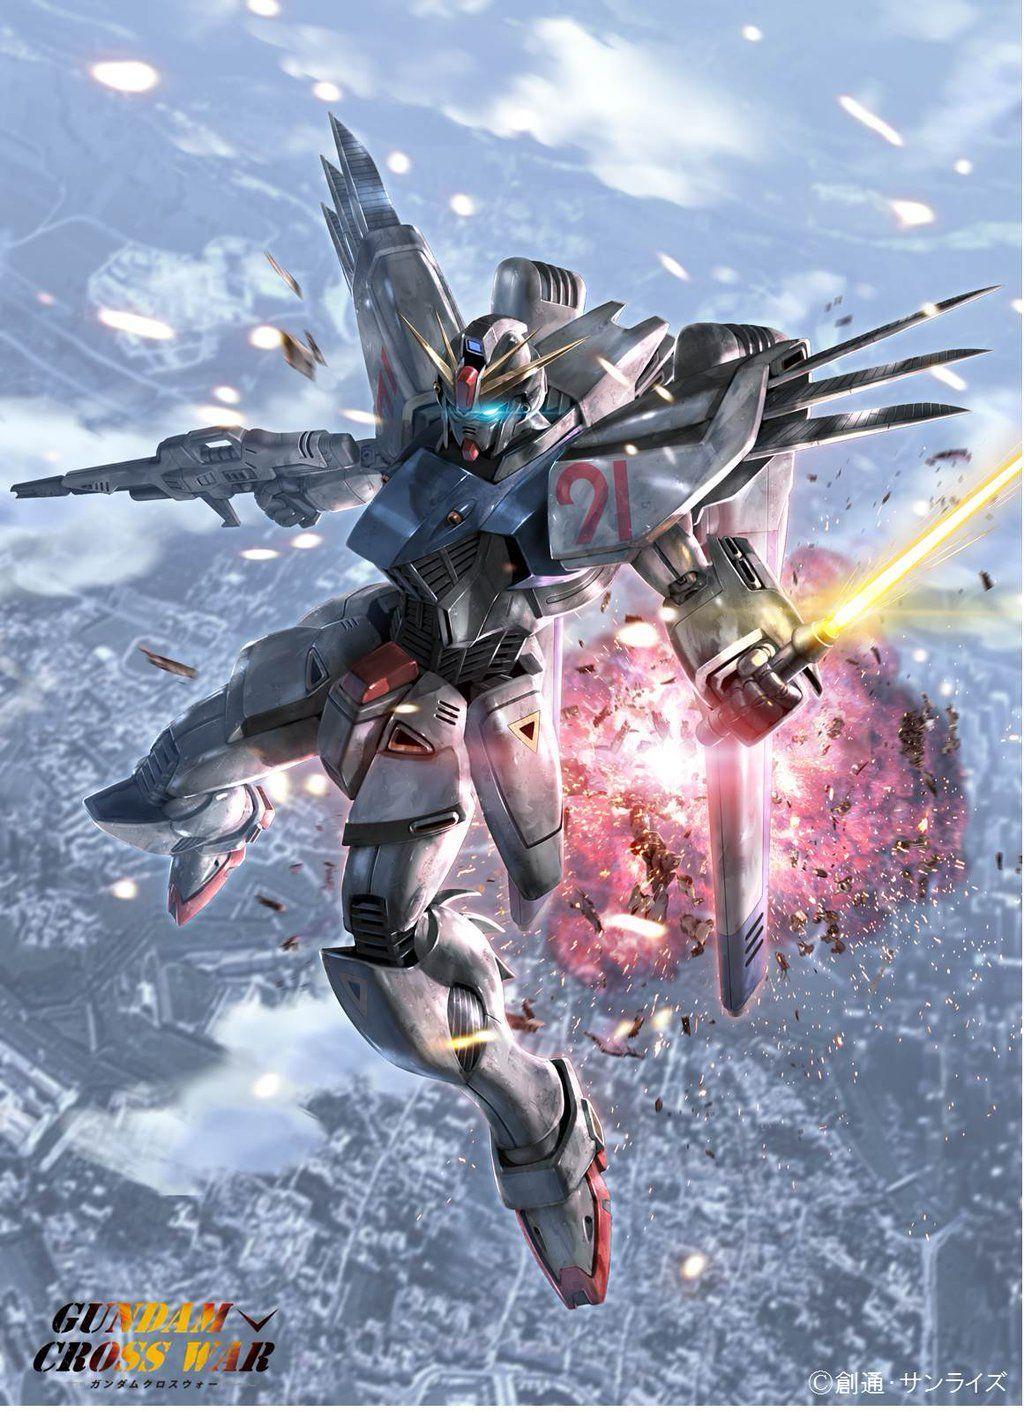 Gundam Cross War Mobile Phone Size Wallpaper. GUNDAM Art. poster